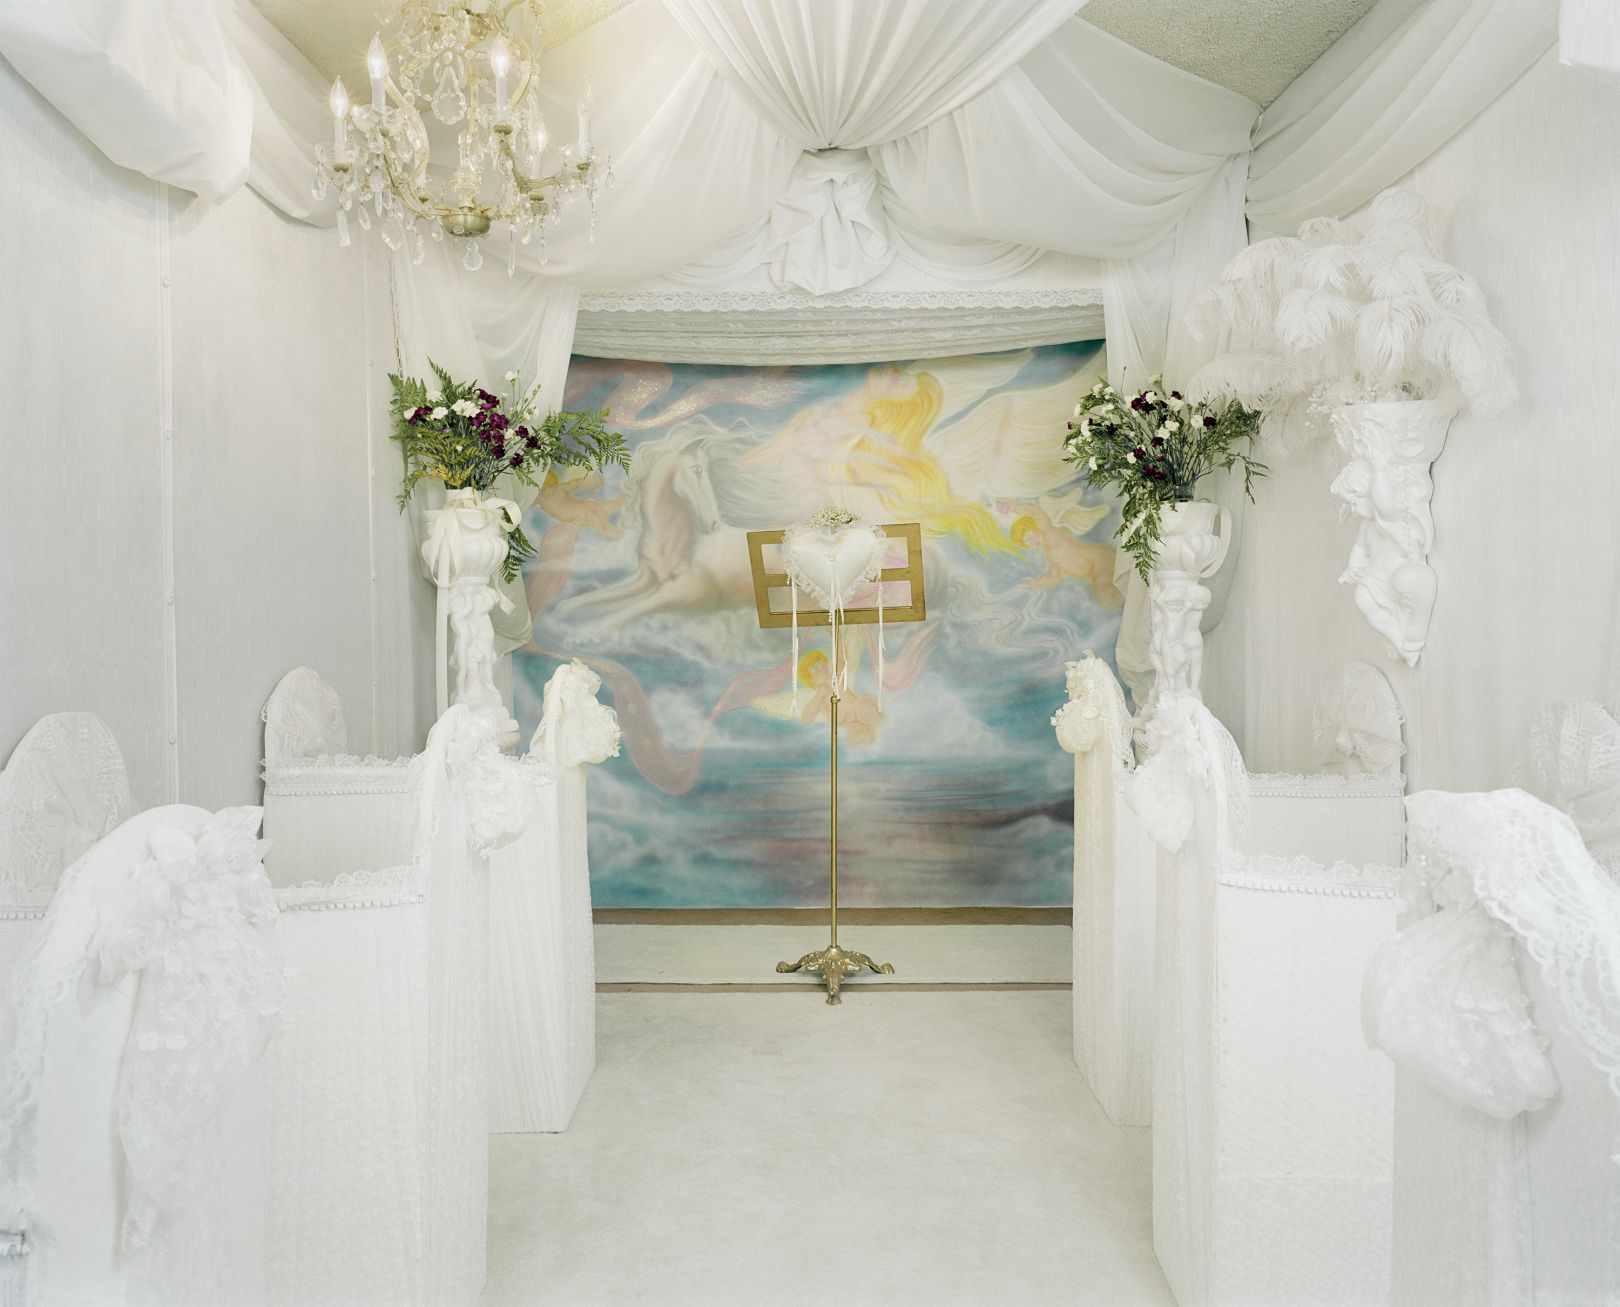 Фотографии Джейн Хилтон незанятых свадебных часовен в Лас-Вегасе в 90-е годы